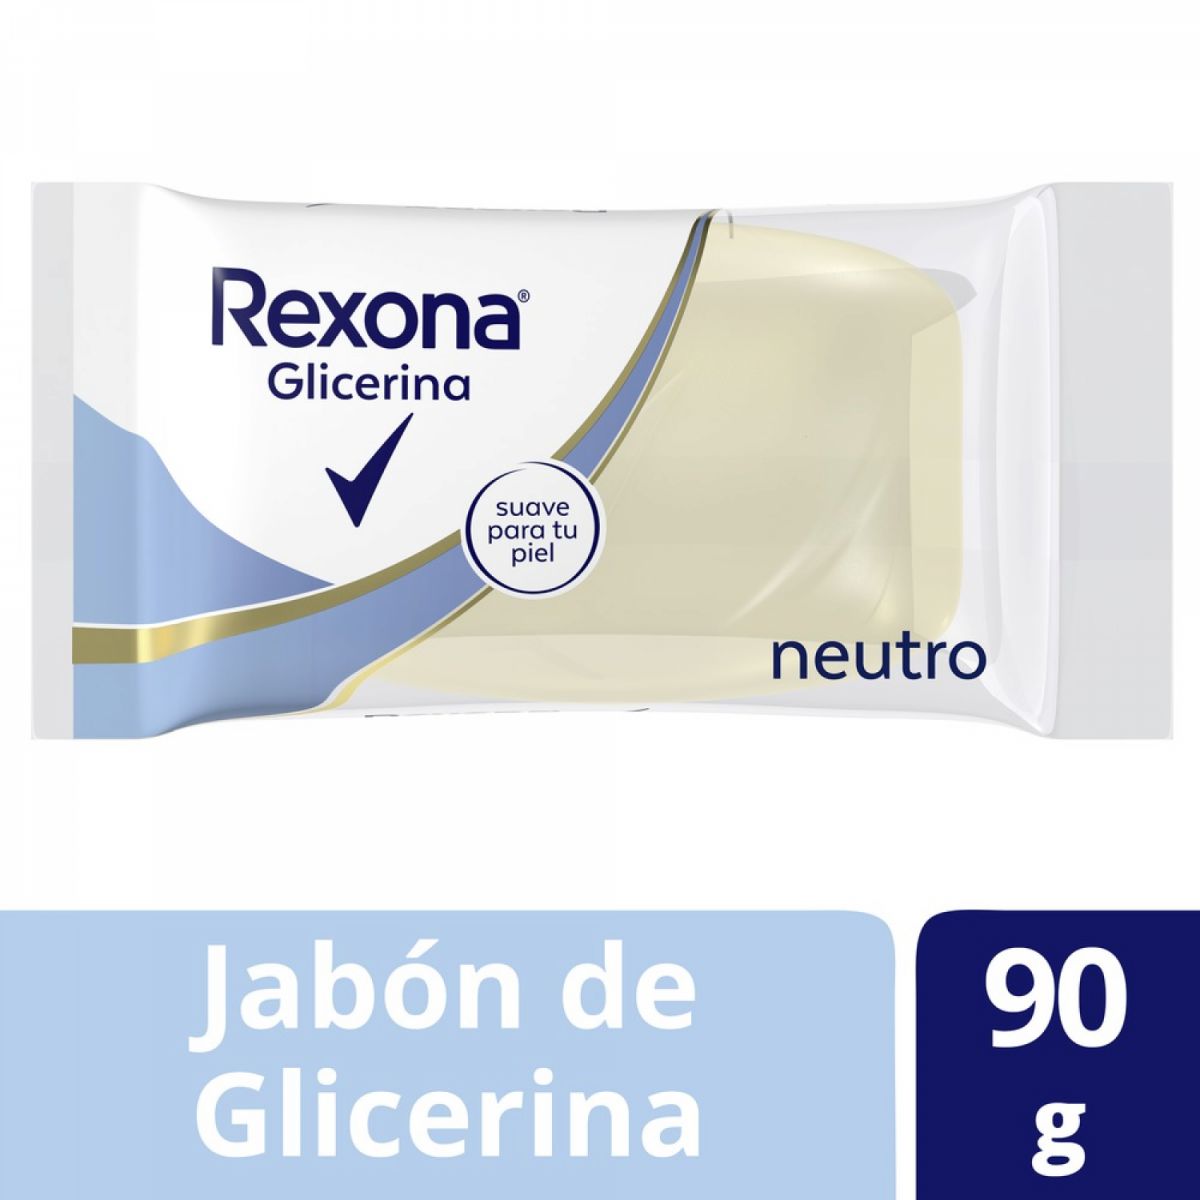 Veritas Jabon de Glicerina Neutro X 120 G en Farmacias Lider